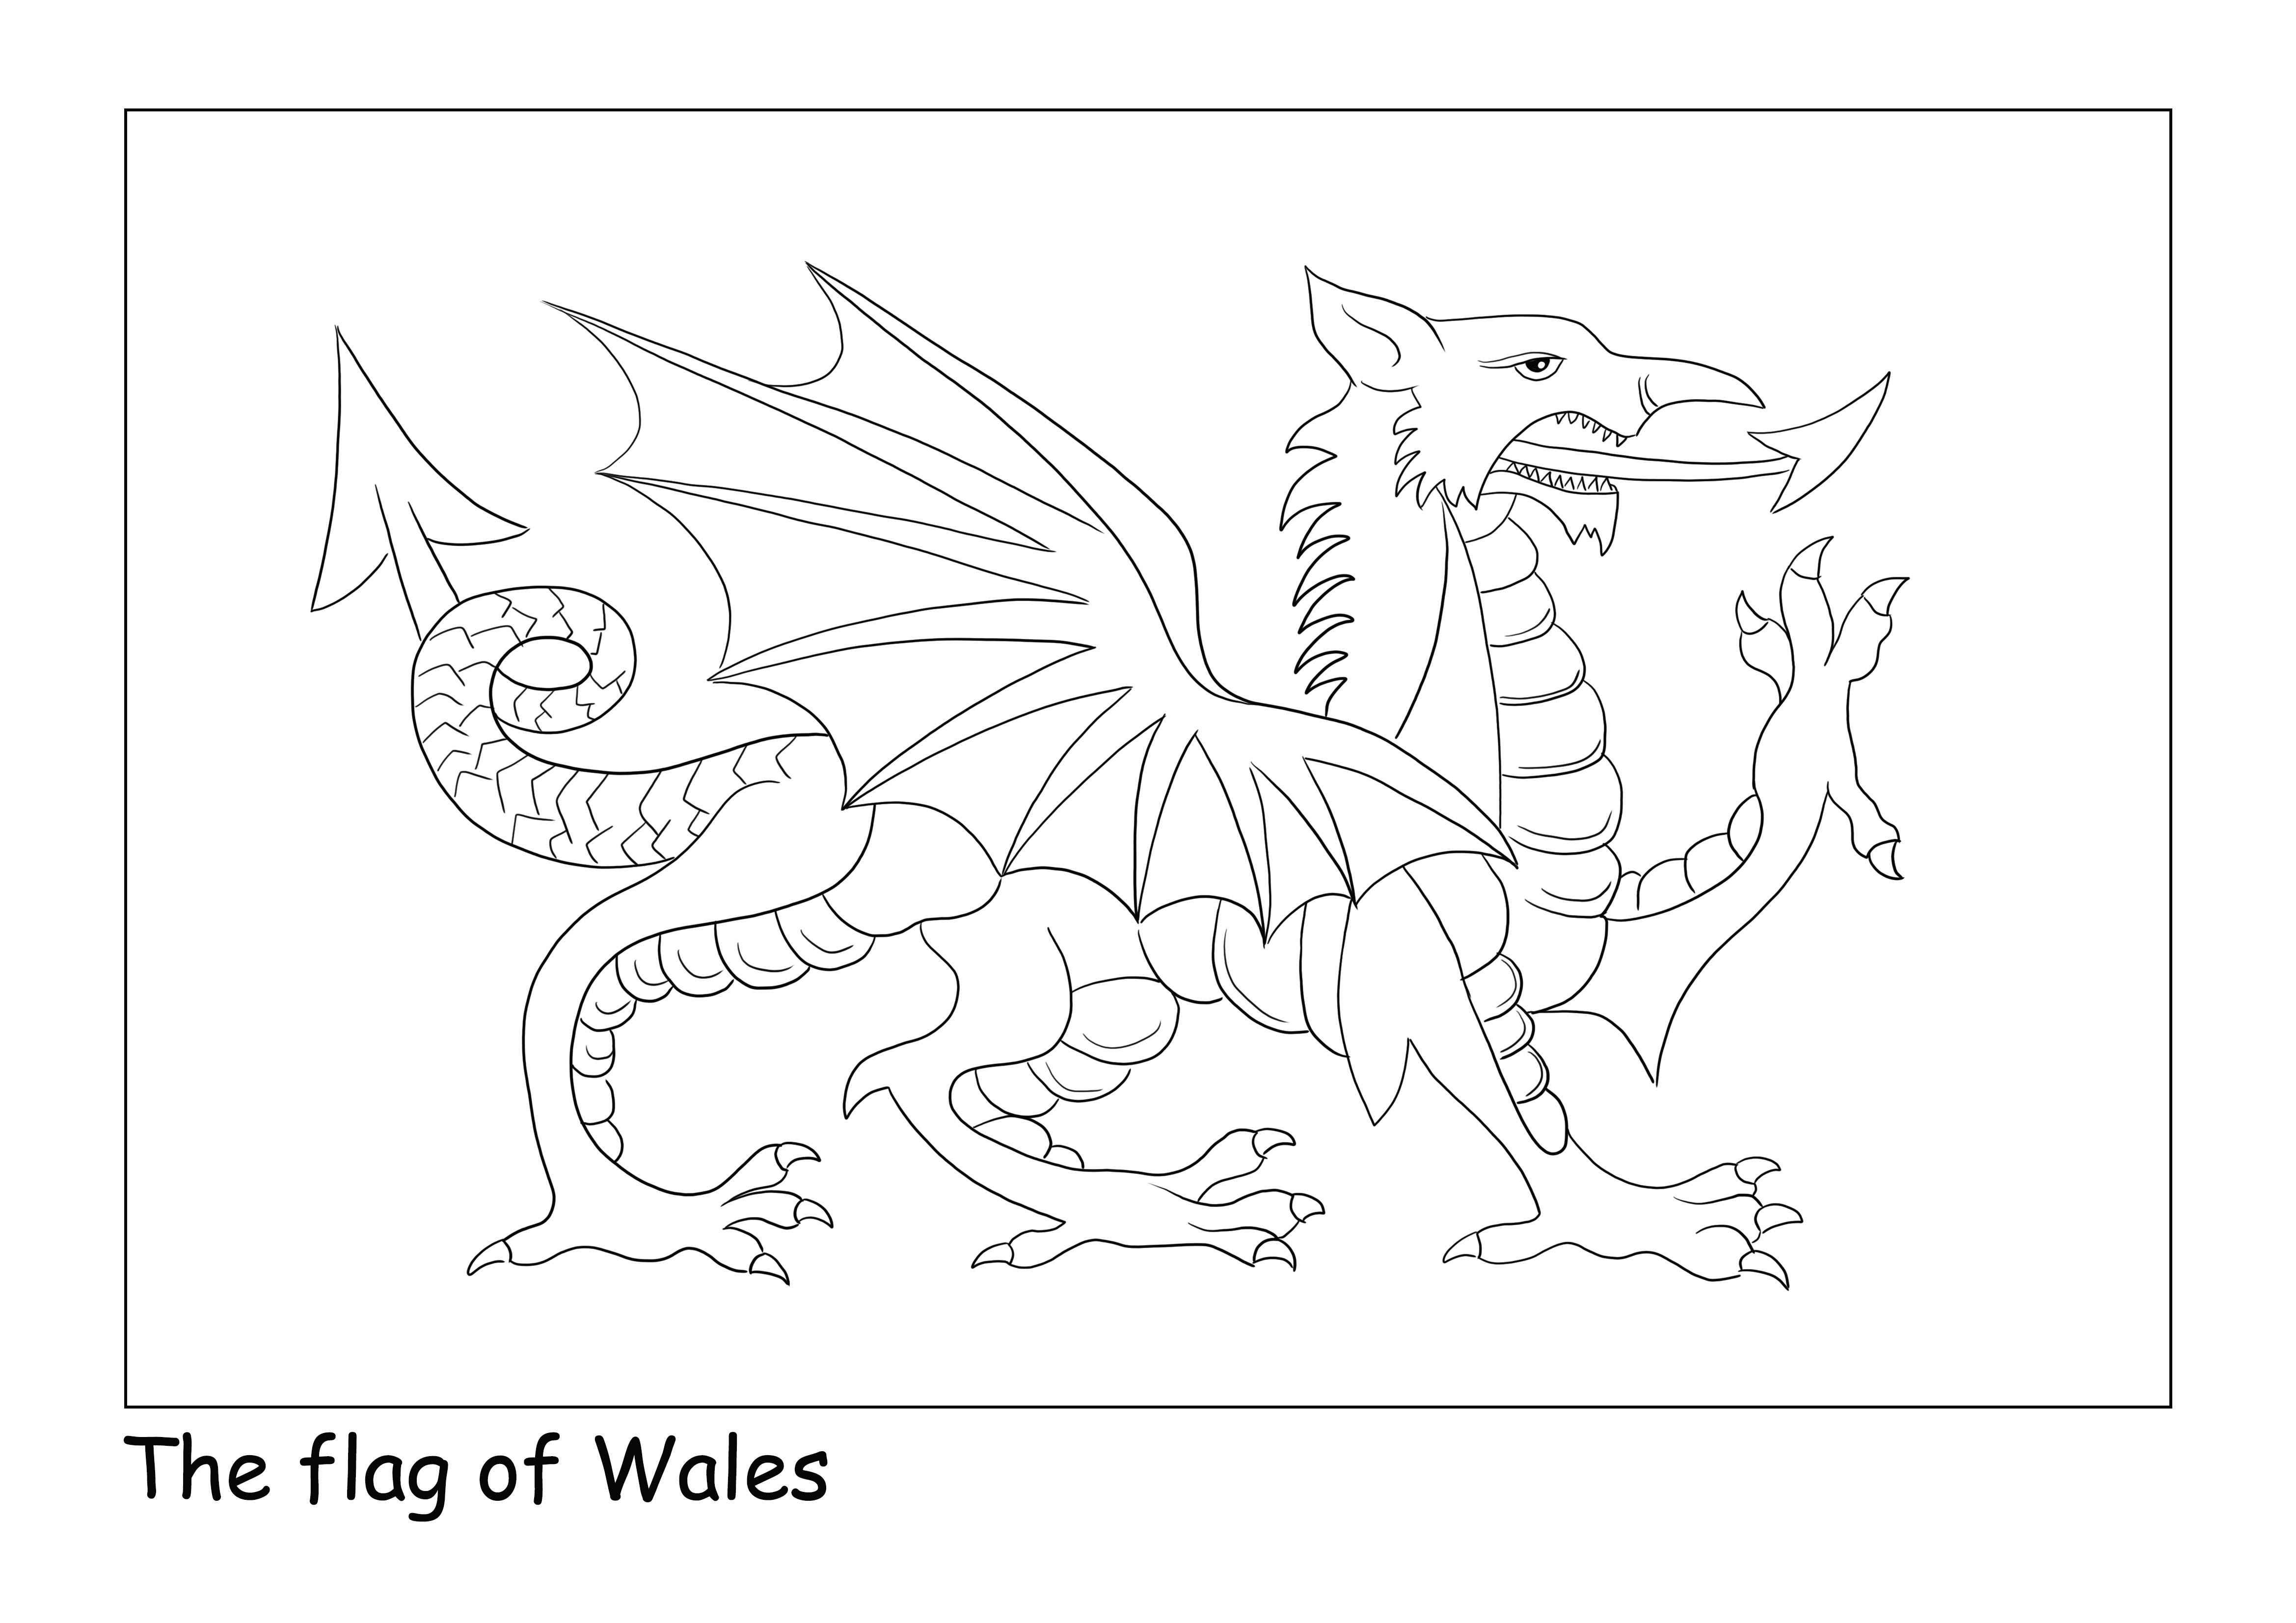 Wales zászlaja az egyszerű oldalon az egyszerű színezés és letöltés érdekében